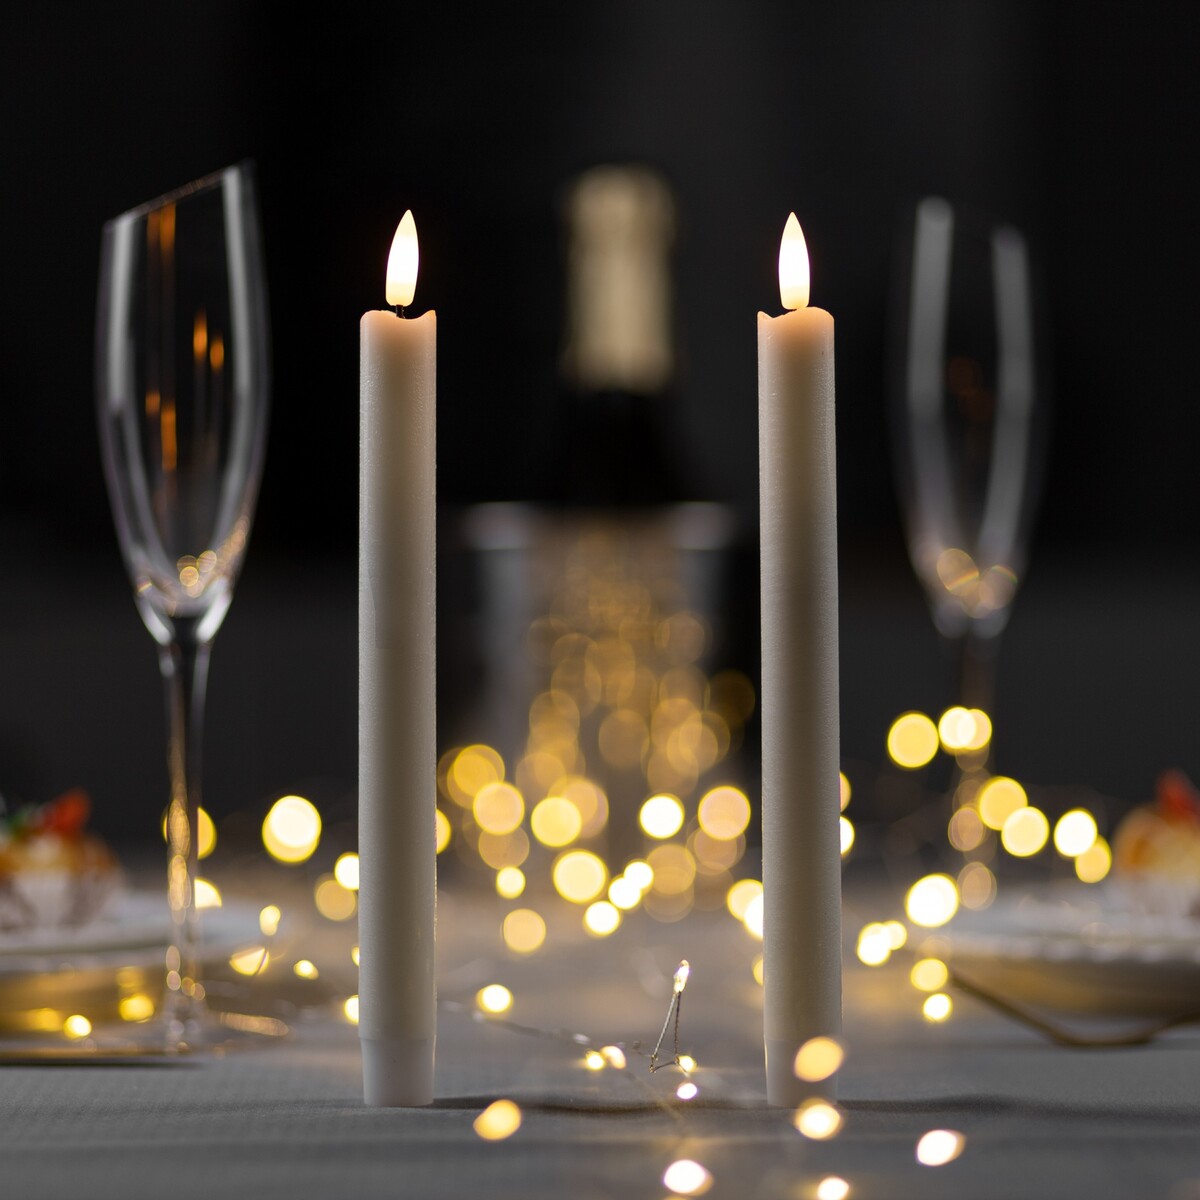 Набор светодиодных свечей, белые, 2 × 25 × 2 см, пластик, воск, батарейки ааах2 (не в комплекте), свечение теплое белое, 2 шт. светодиодная свеча бежевая 7 × 13 × 7 см пластик батарейки аах2 не в комплекте свечение теплое белое